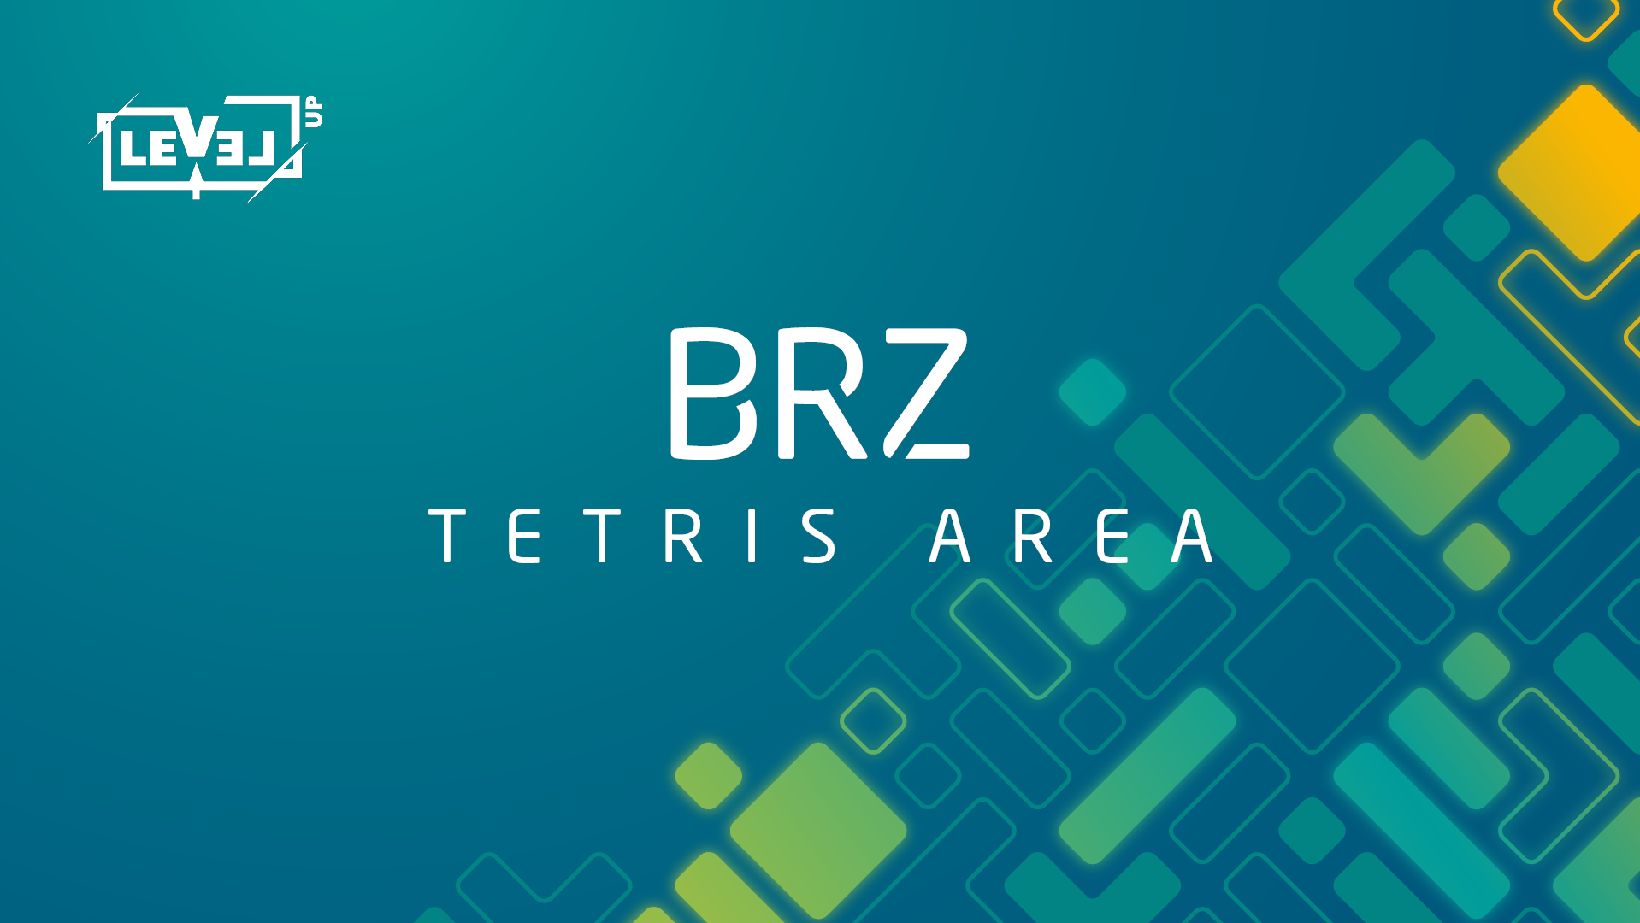 Schriftzug "BRZ Tetris Area" 